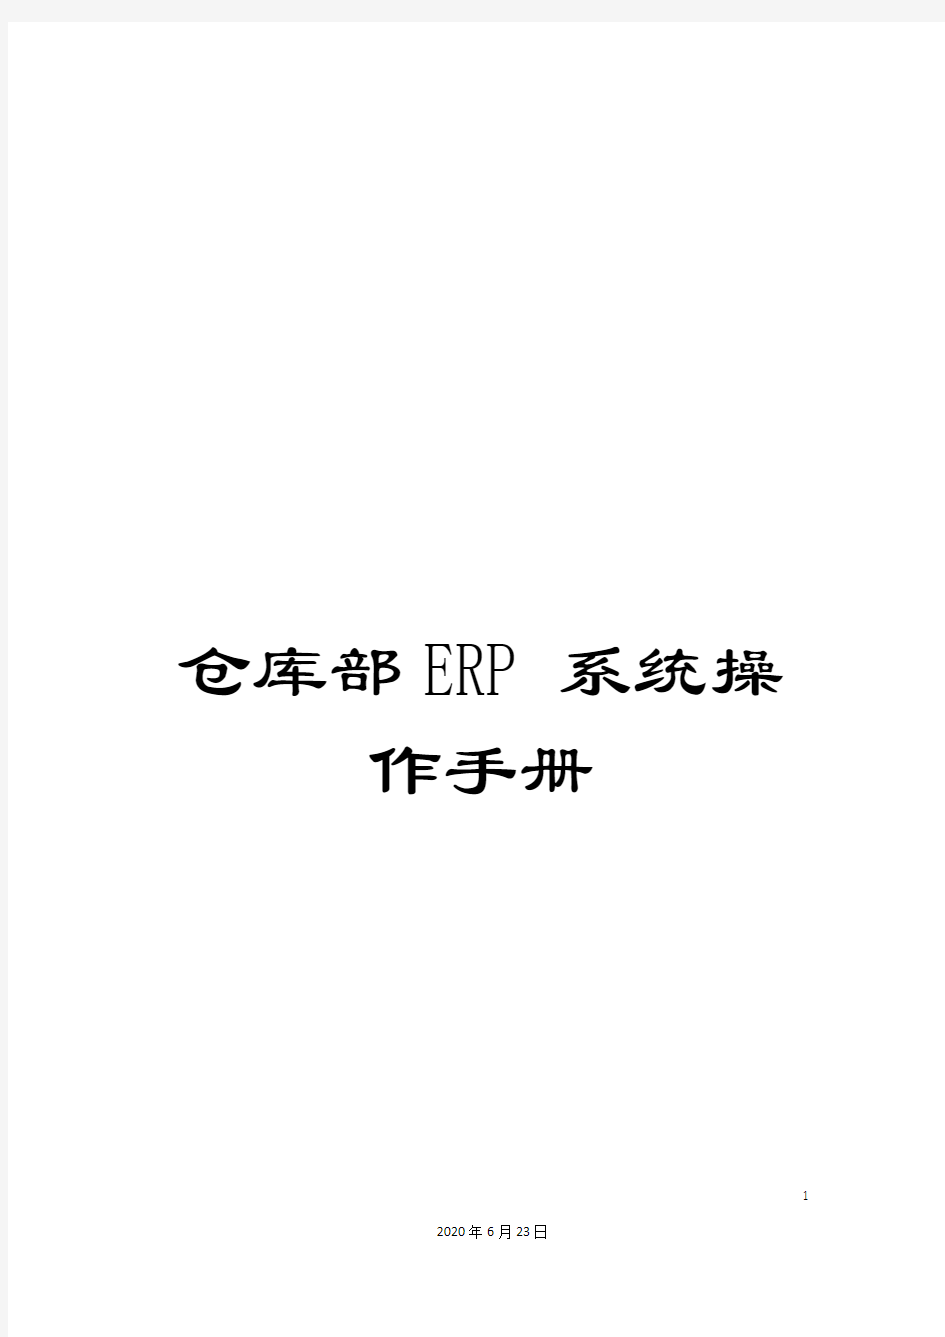 仓库部ERP系统操作手册